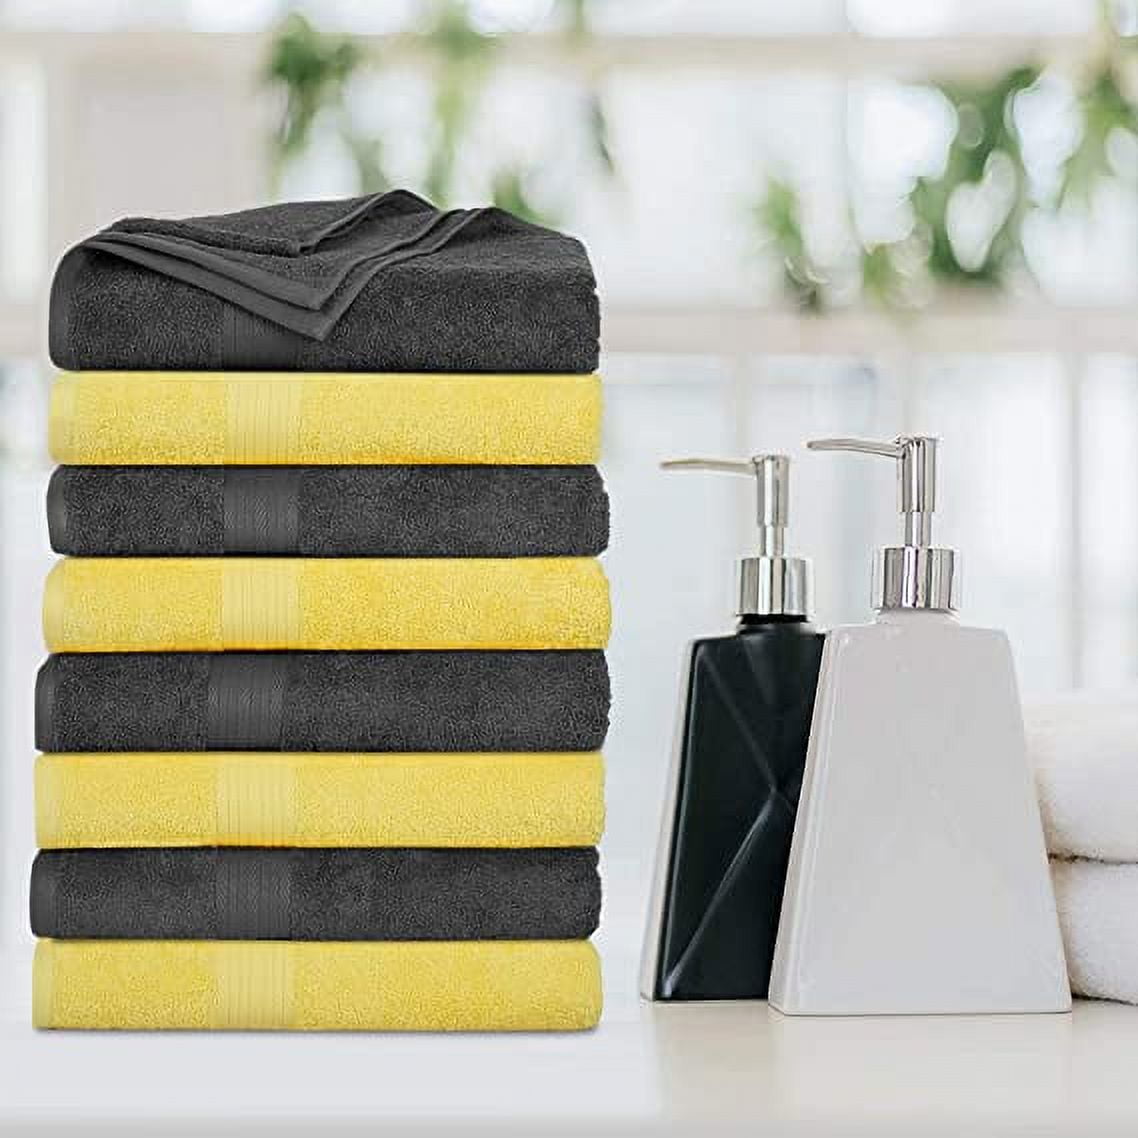  Grandeur Hospitality Bath Towel 6 Pack 30 x 54 100